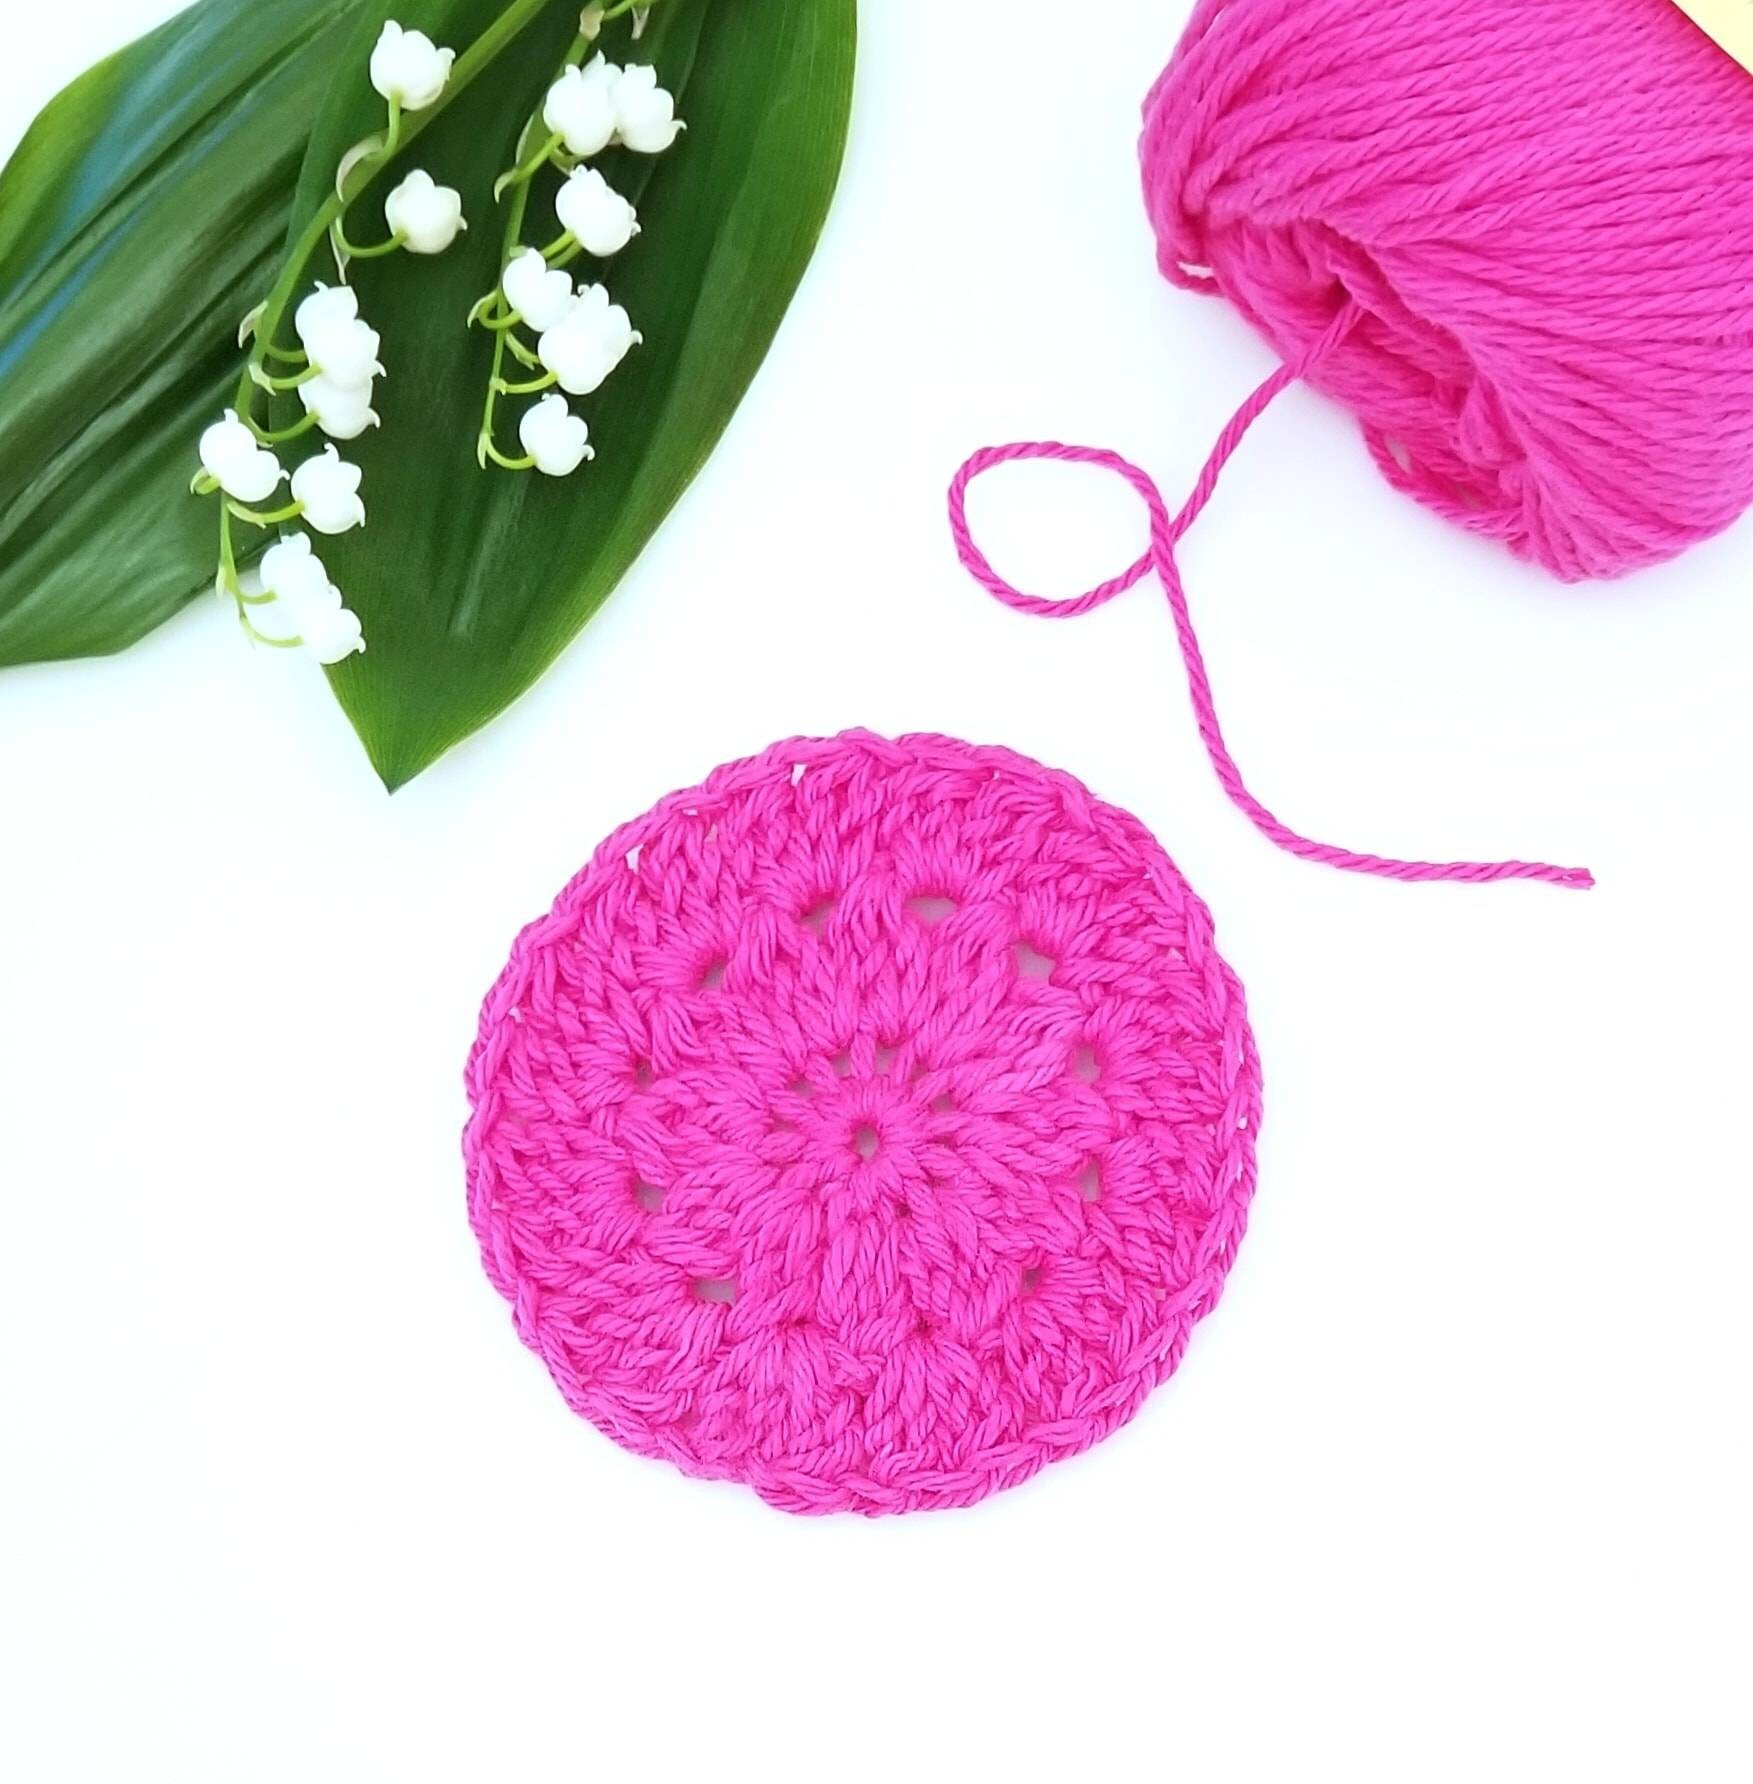 Favorite Scrubby Crochet Pattern